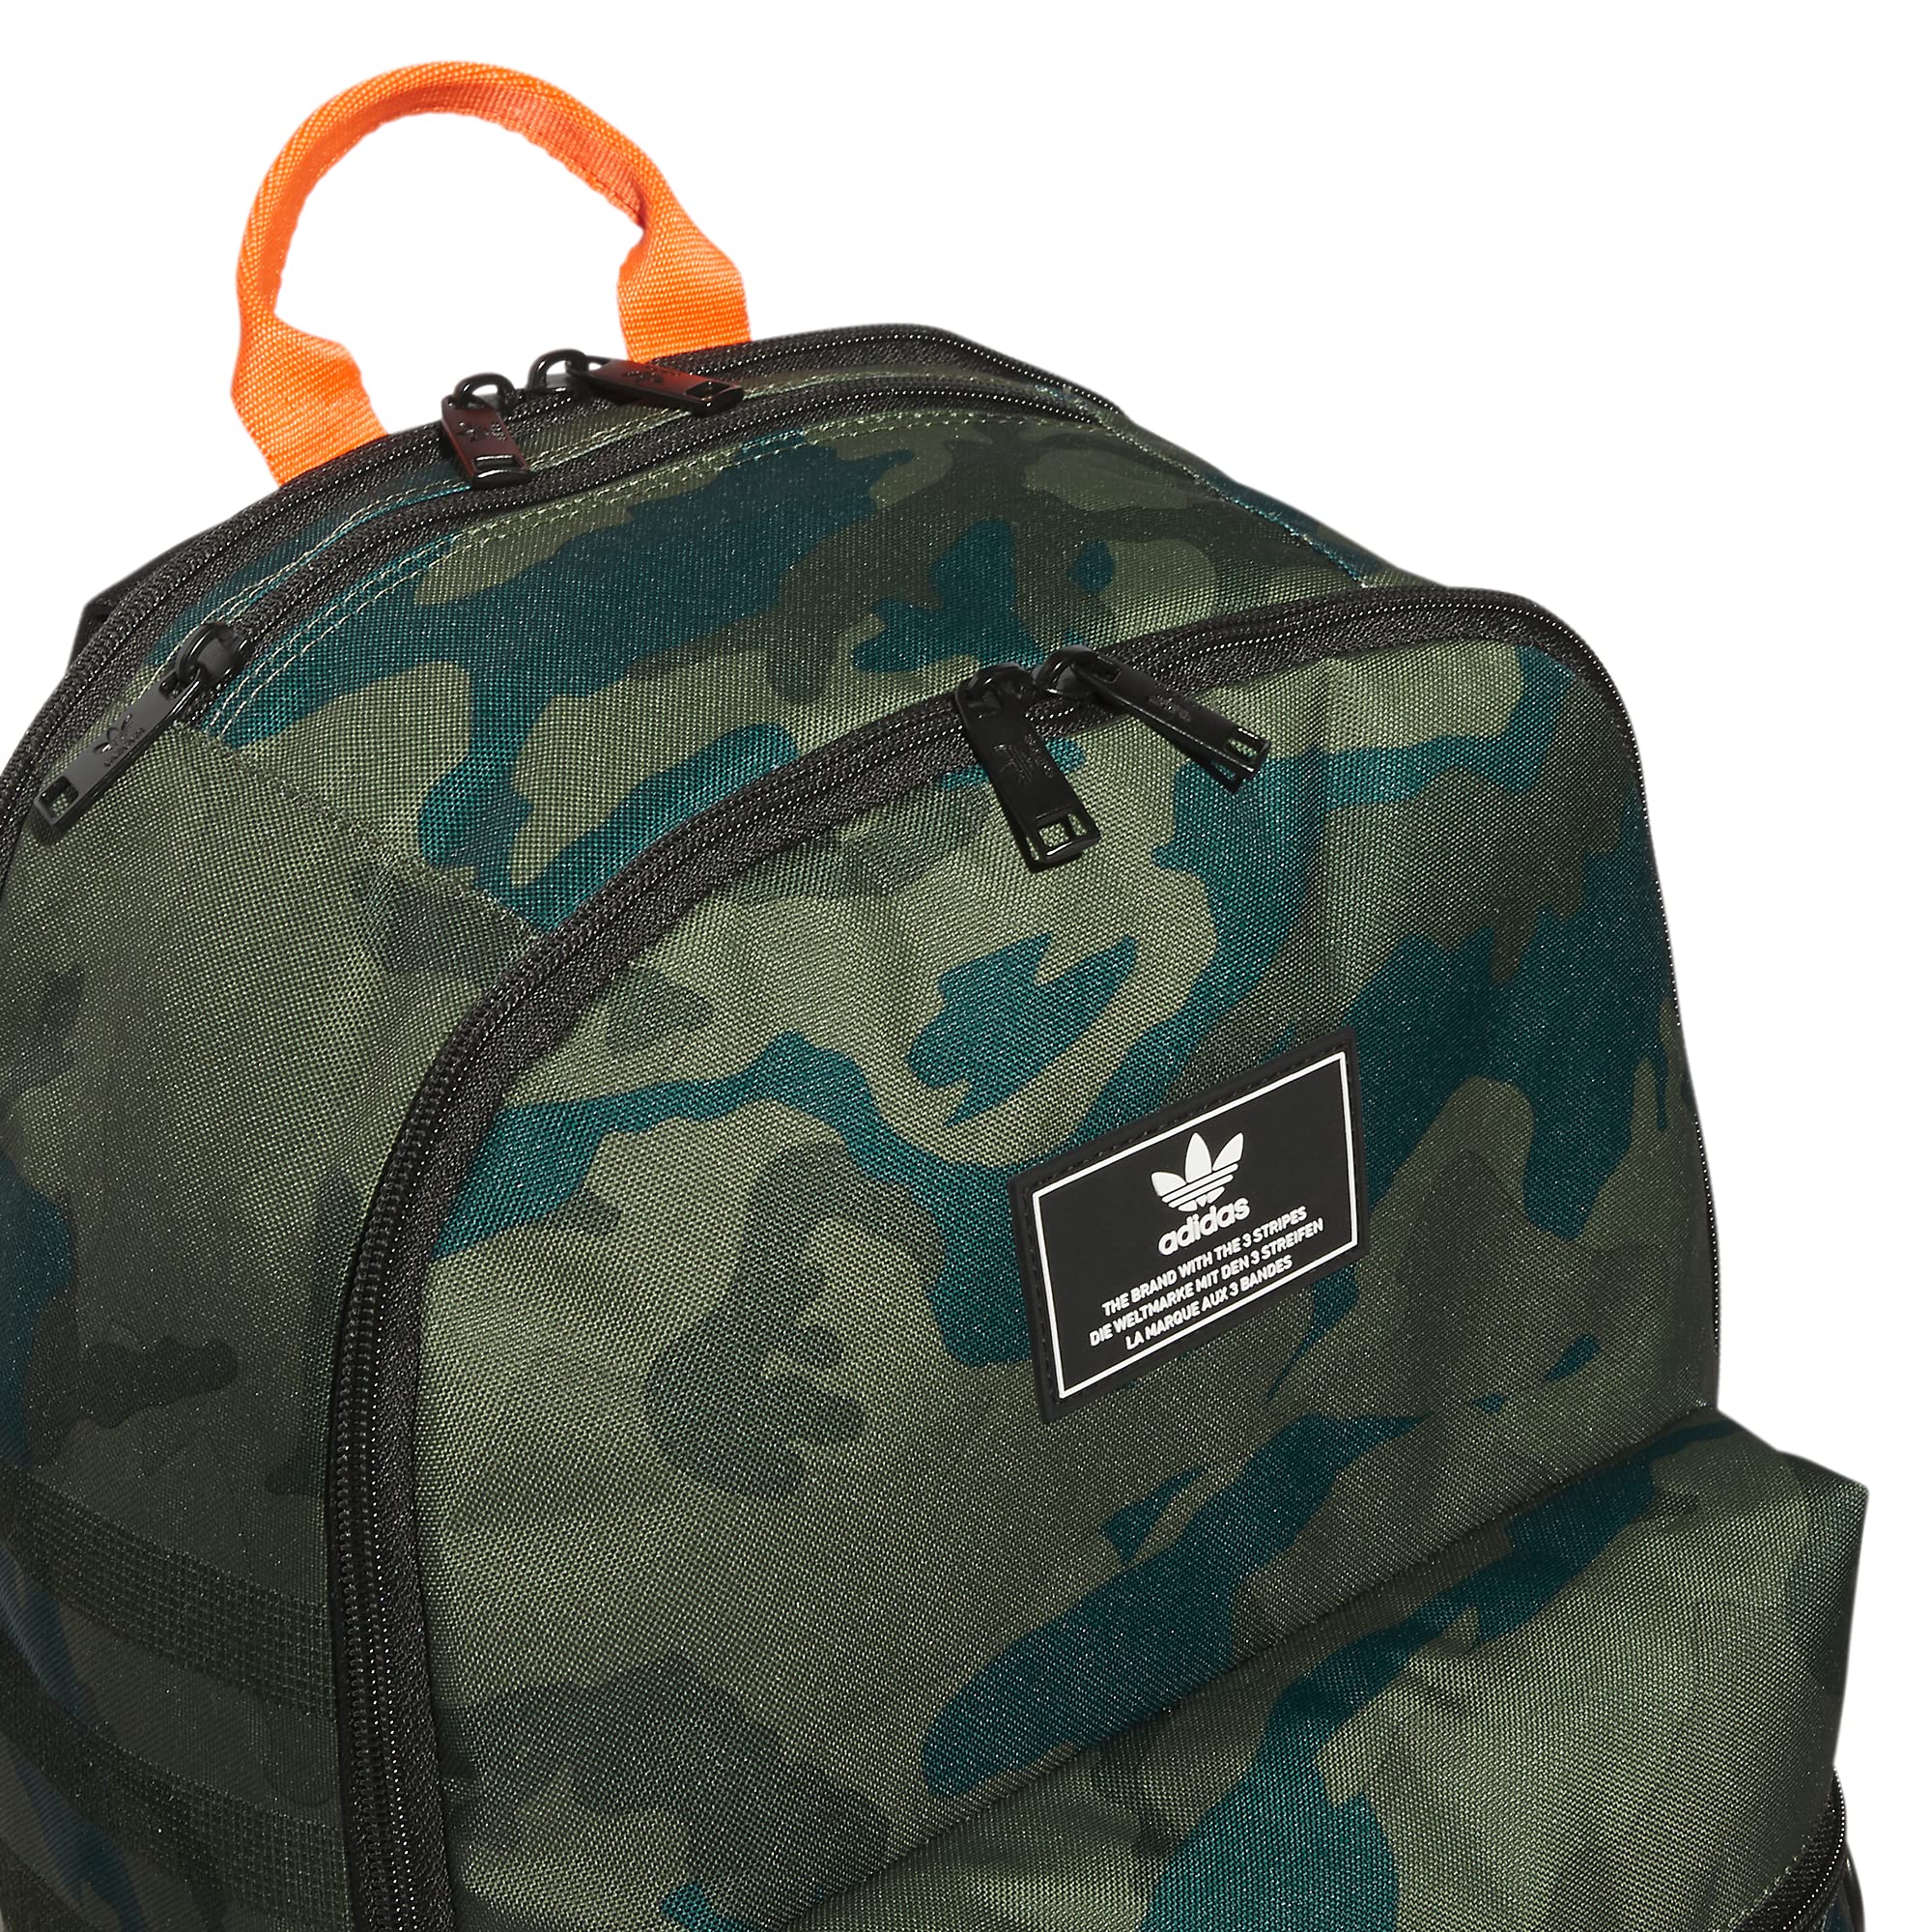 adidas Originals National 3.0 Backpack, Classic Camo Olive Cargo/Black/Impact Orange, One Size